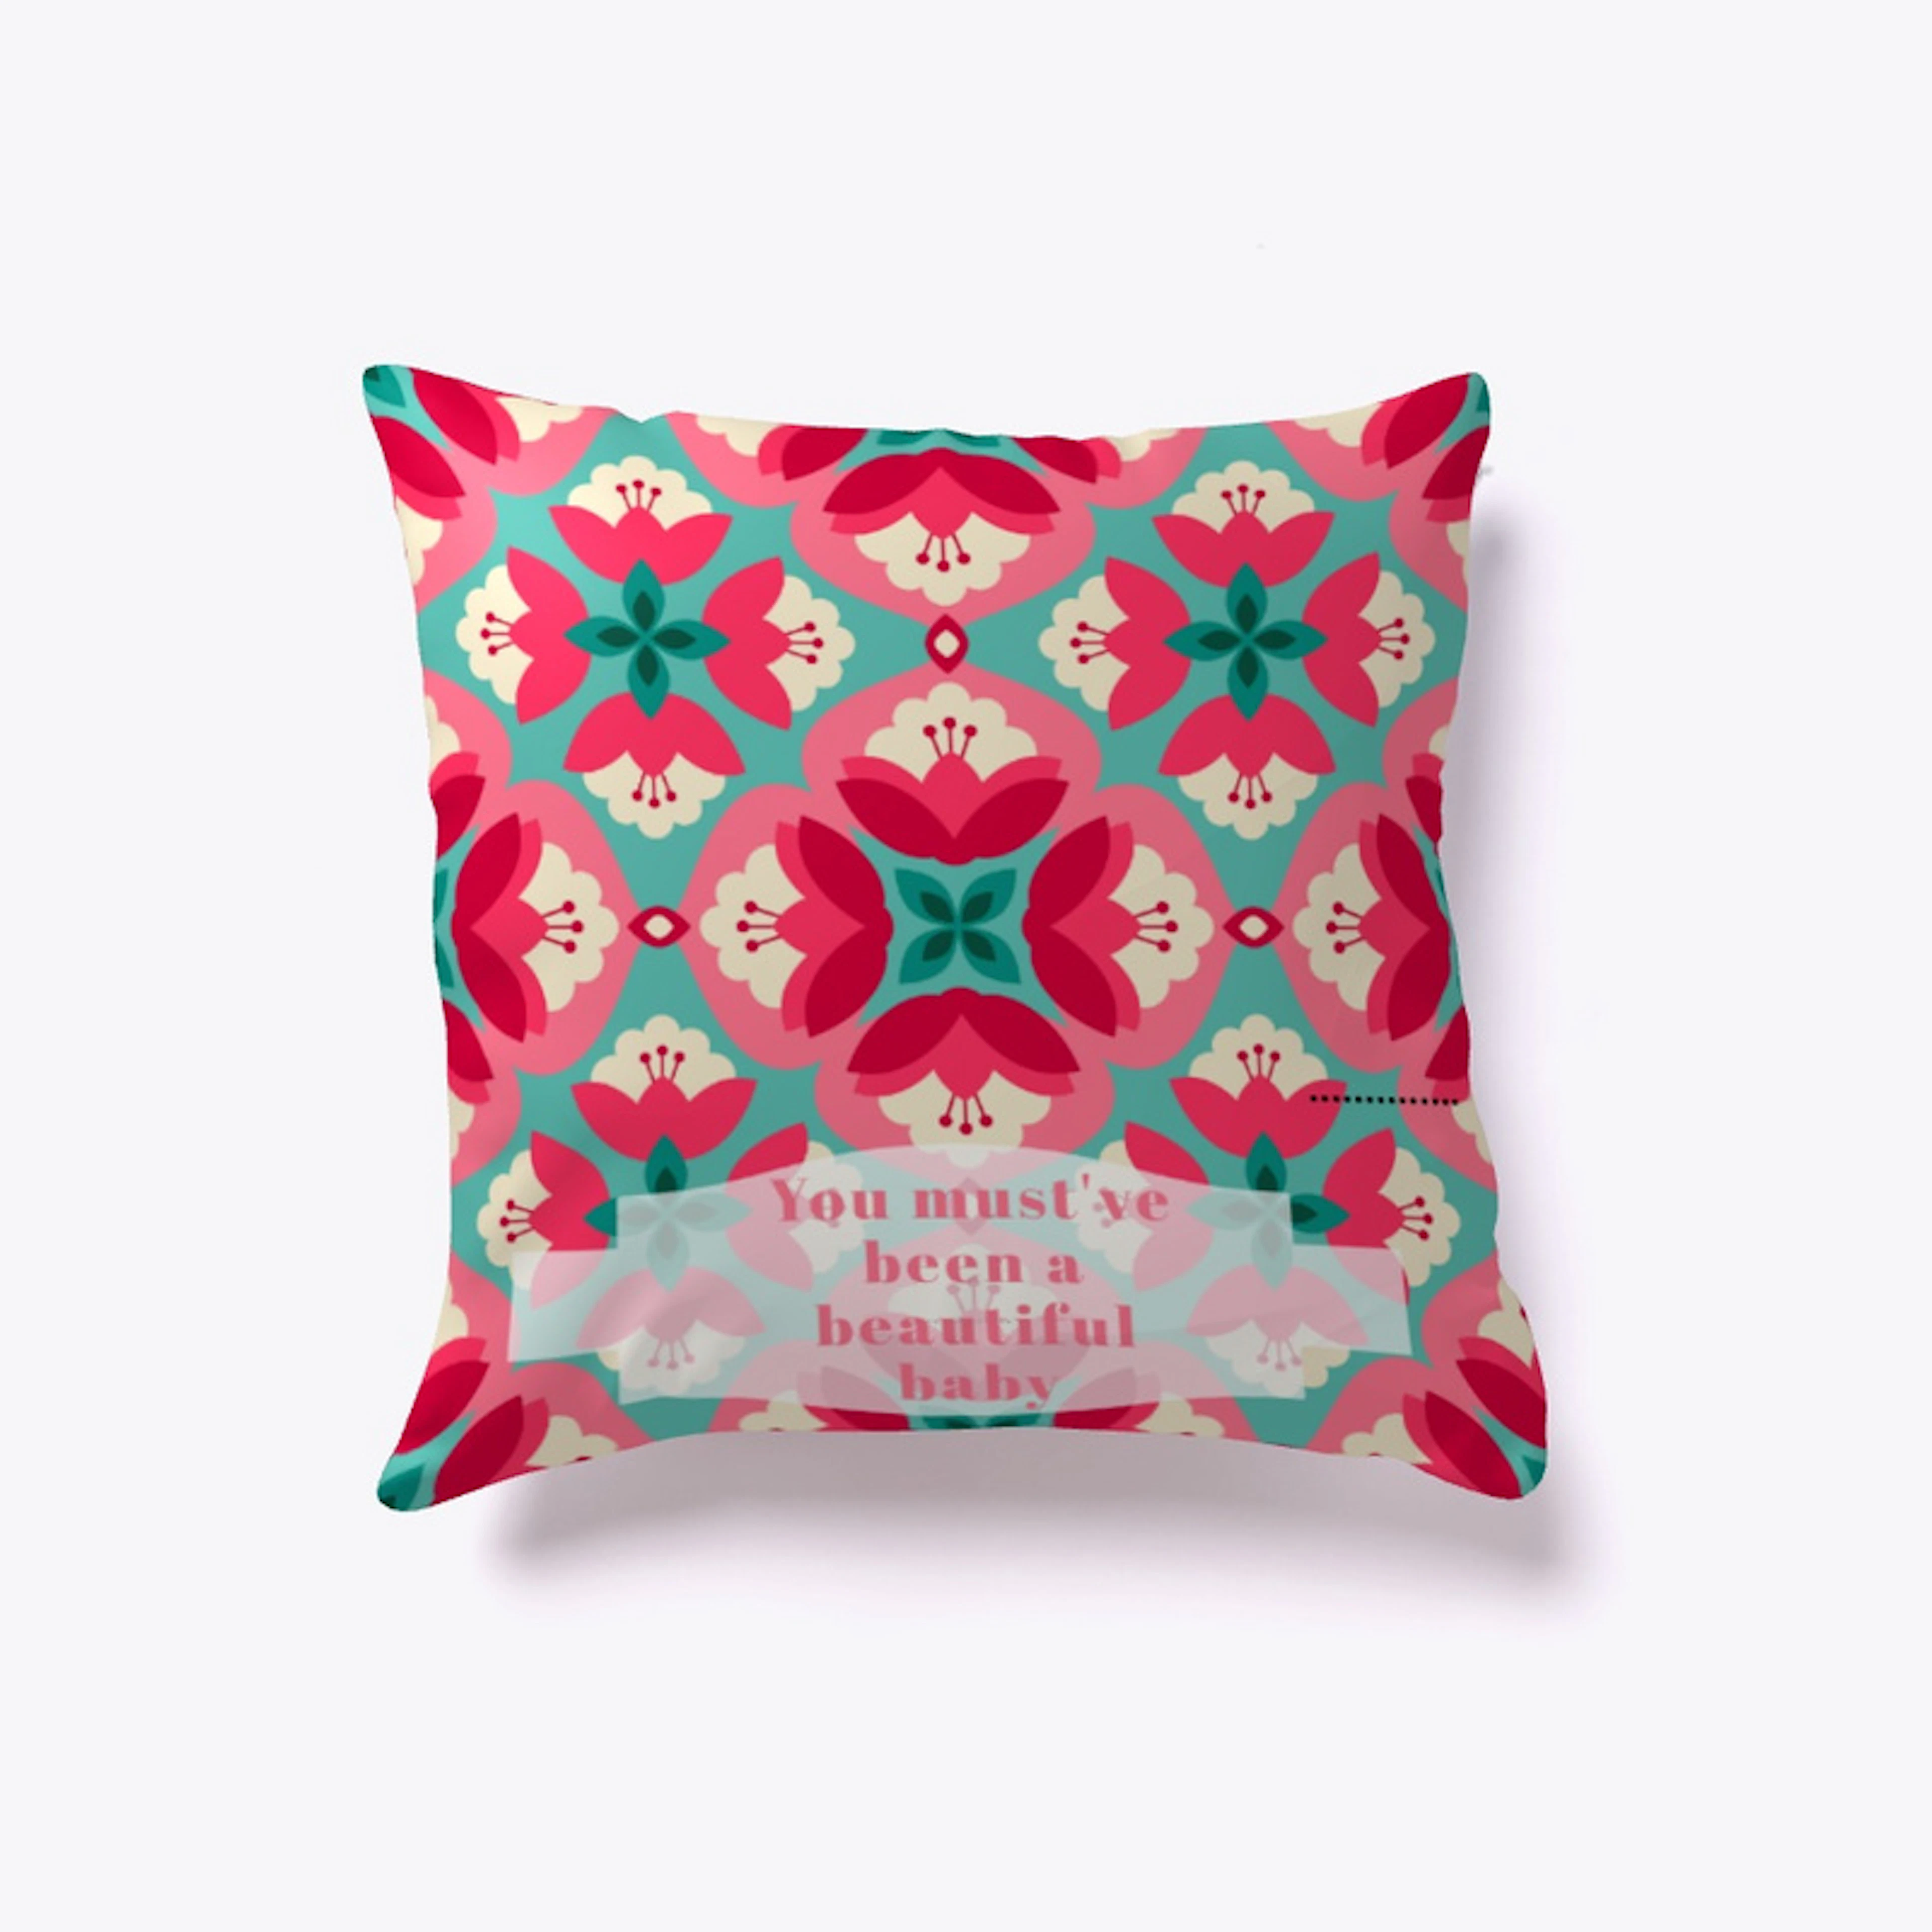 Decorative inspiring pillow